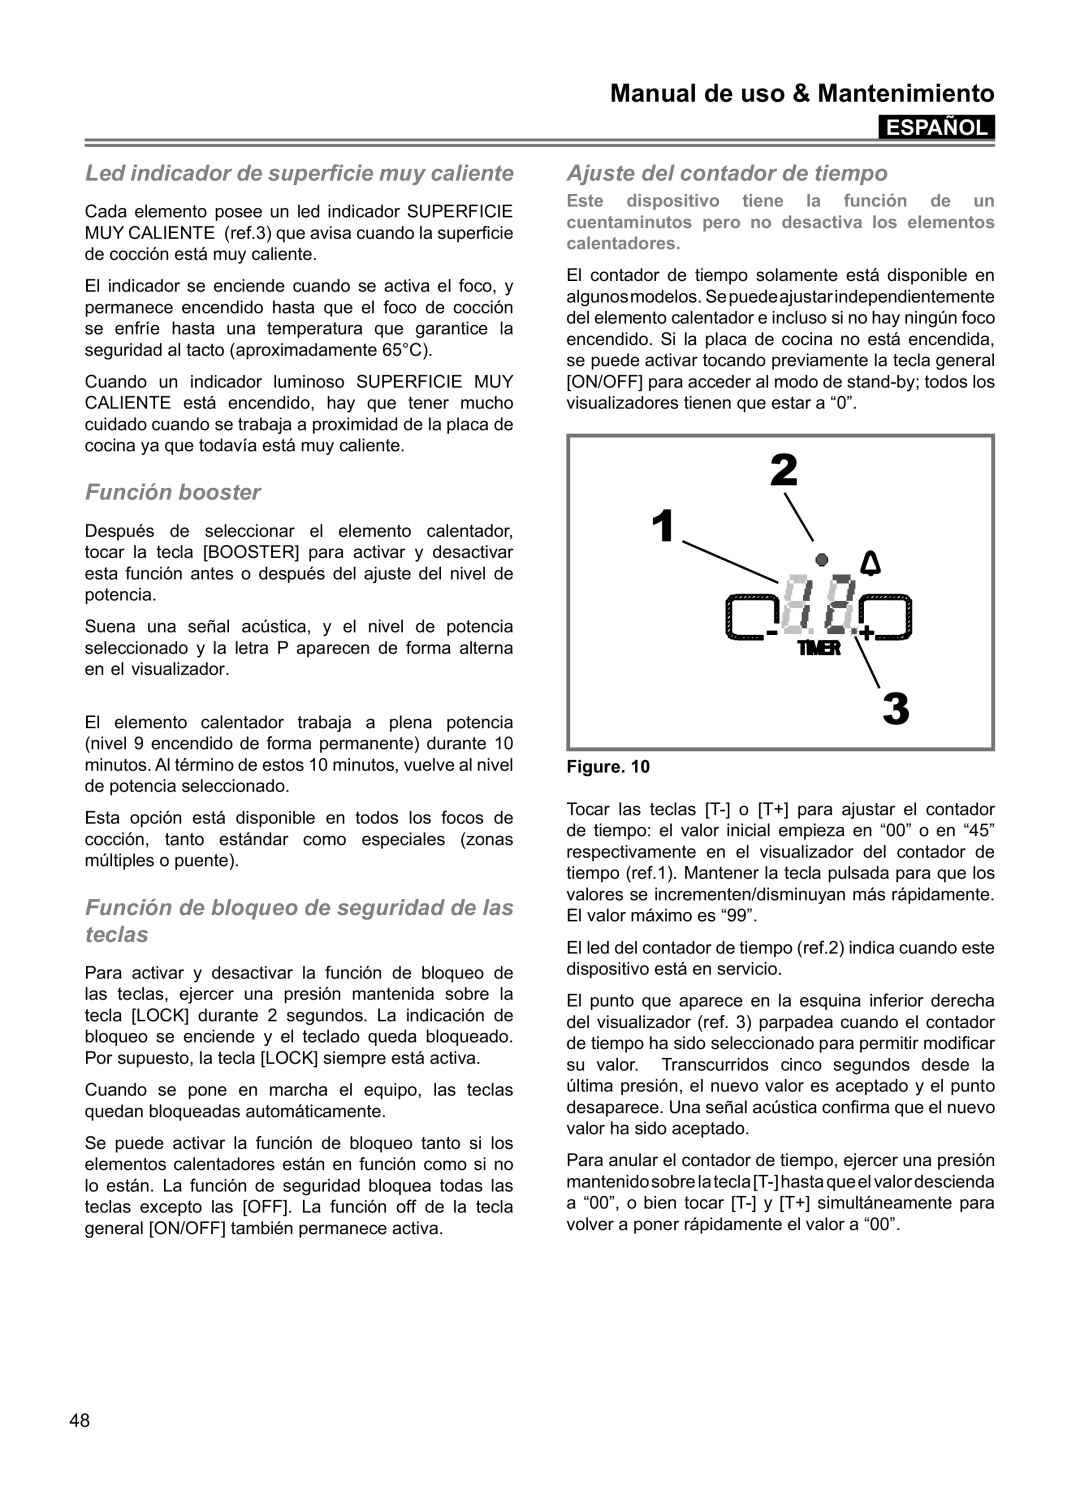 Blomberg CTE 36500 2 1 3, Manual de uso & Mantenimiento, Español, Cada elemento posee un led indicador SUPERFICIE 